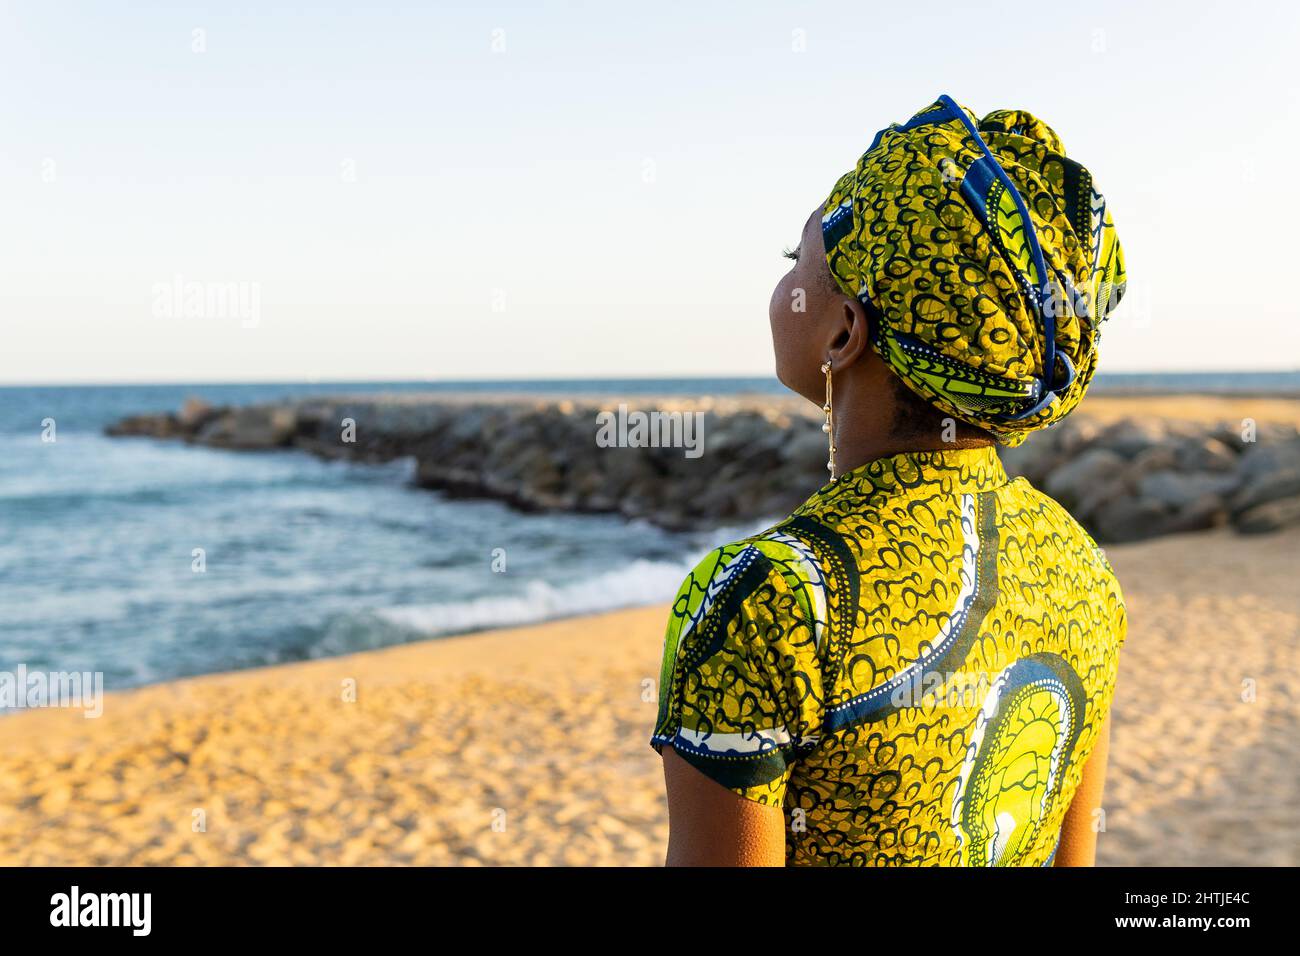 Vista posterior mujer africana en el tradicional pañuelo con la cabeza  disfrutando de la luz del sol mientras se relaja en la playa de arena  contra el mar Fotografía de stock -